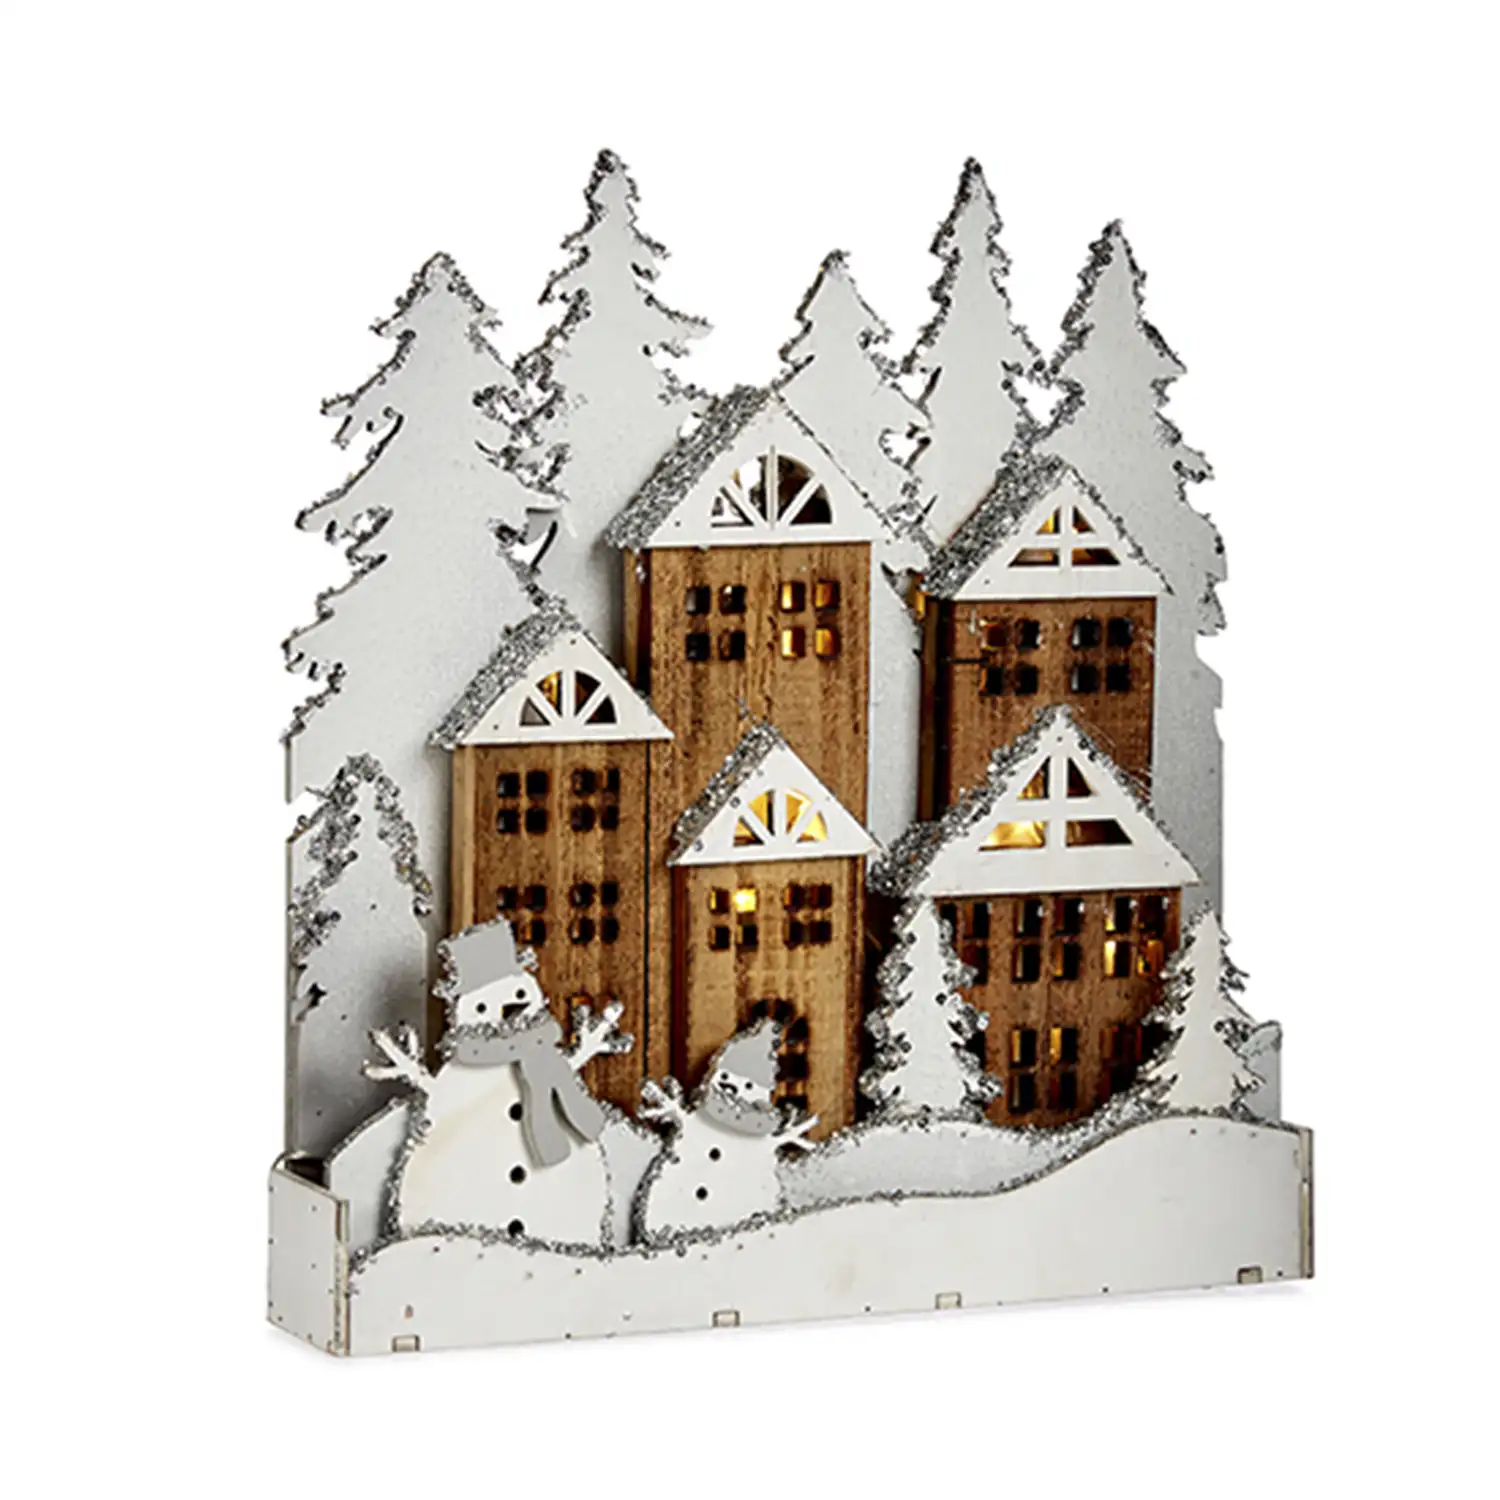 Figura pueblo de madera blanca con nieve.